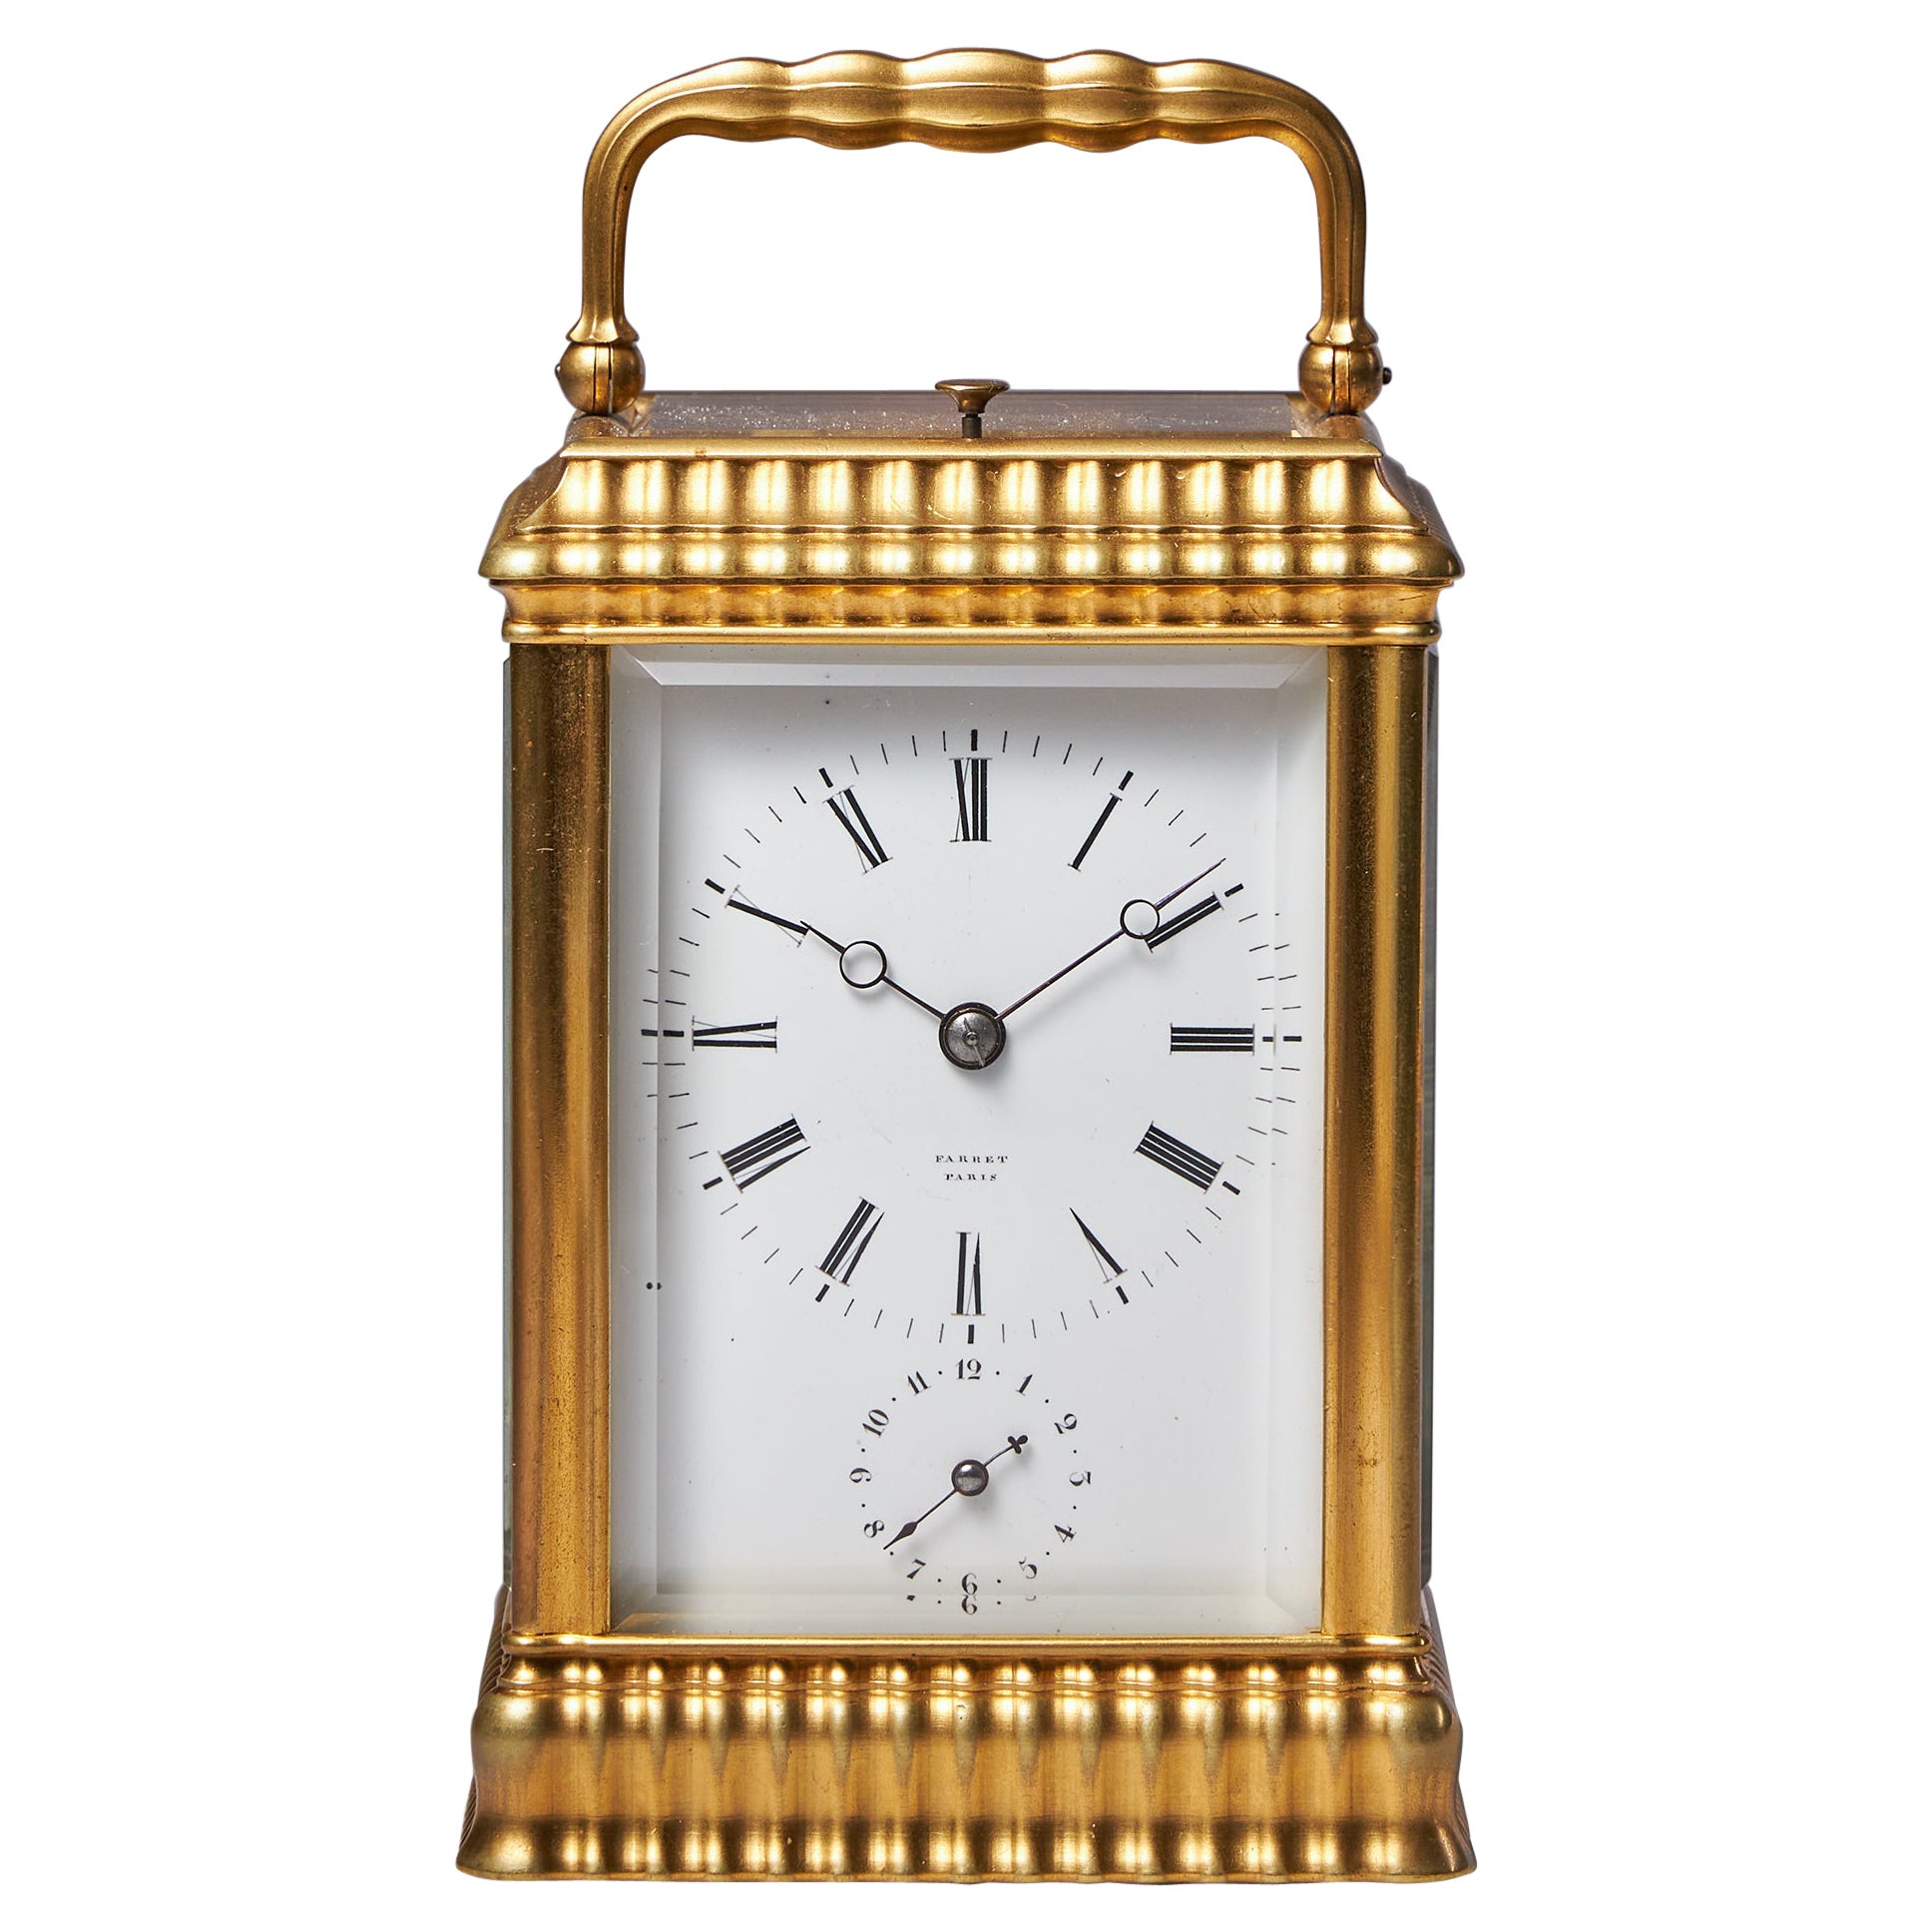 Horloge rare et nervurée de huit jours surmontée d'un grand boîtier en laiton doré représentant une grande caisse